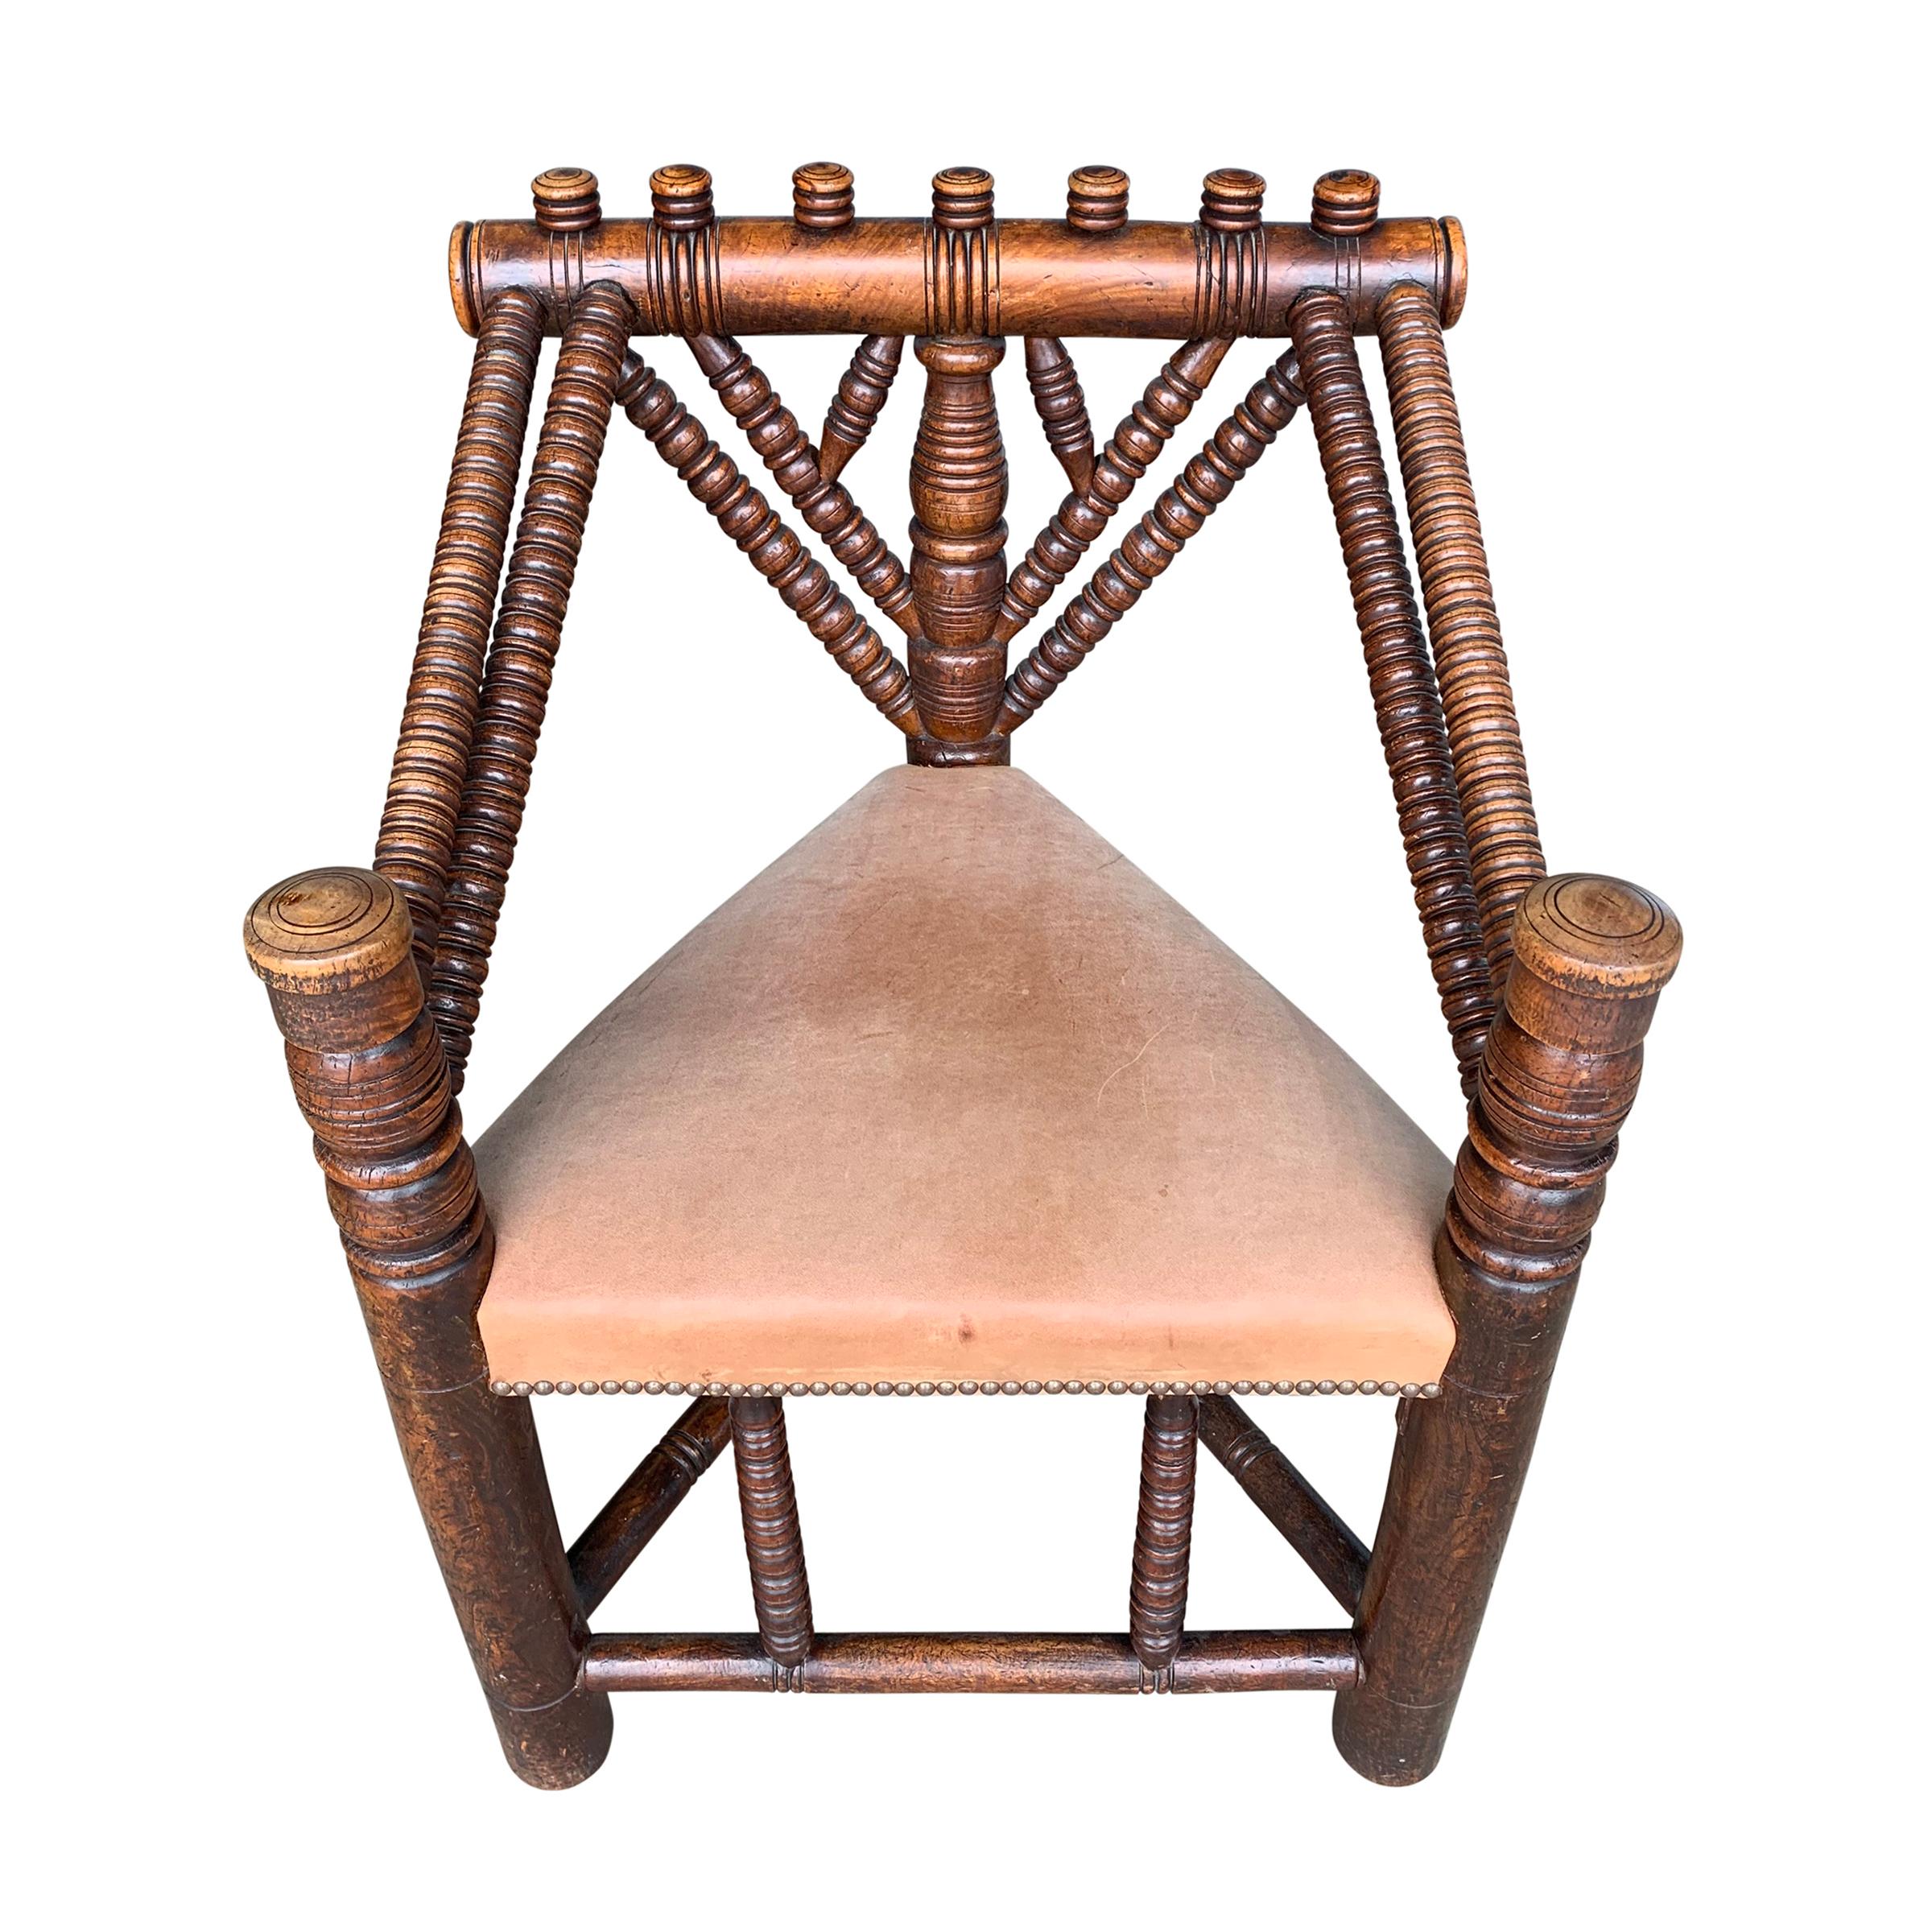 Ein unglaublicher englischer Drechslerstuhl aus dem 18. Jahrhundert, der die Talente eines geschickten Drechslers zur Schau stellt, mit einem dreieckigen Sitz, der mit glattem Naturleder gepolstert ist und eine wunderschöne Patina aufweist. Stühle